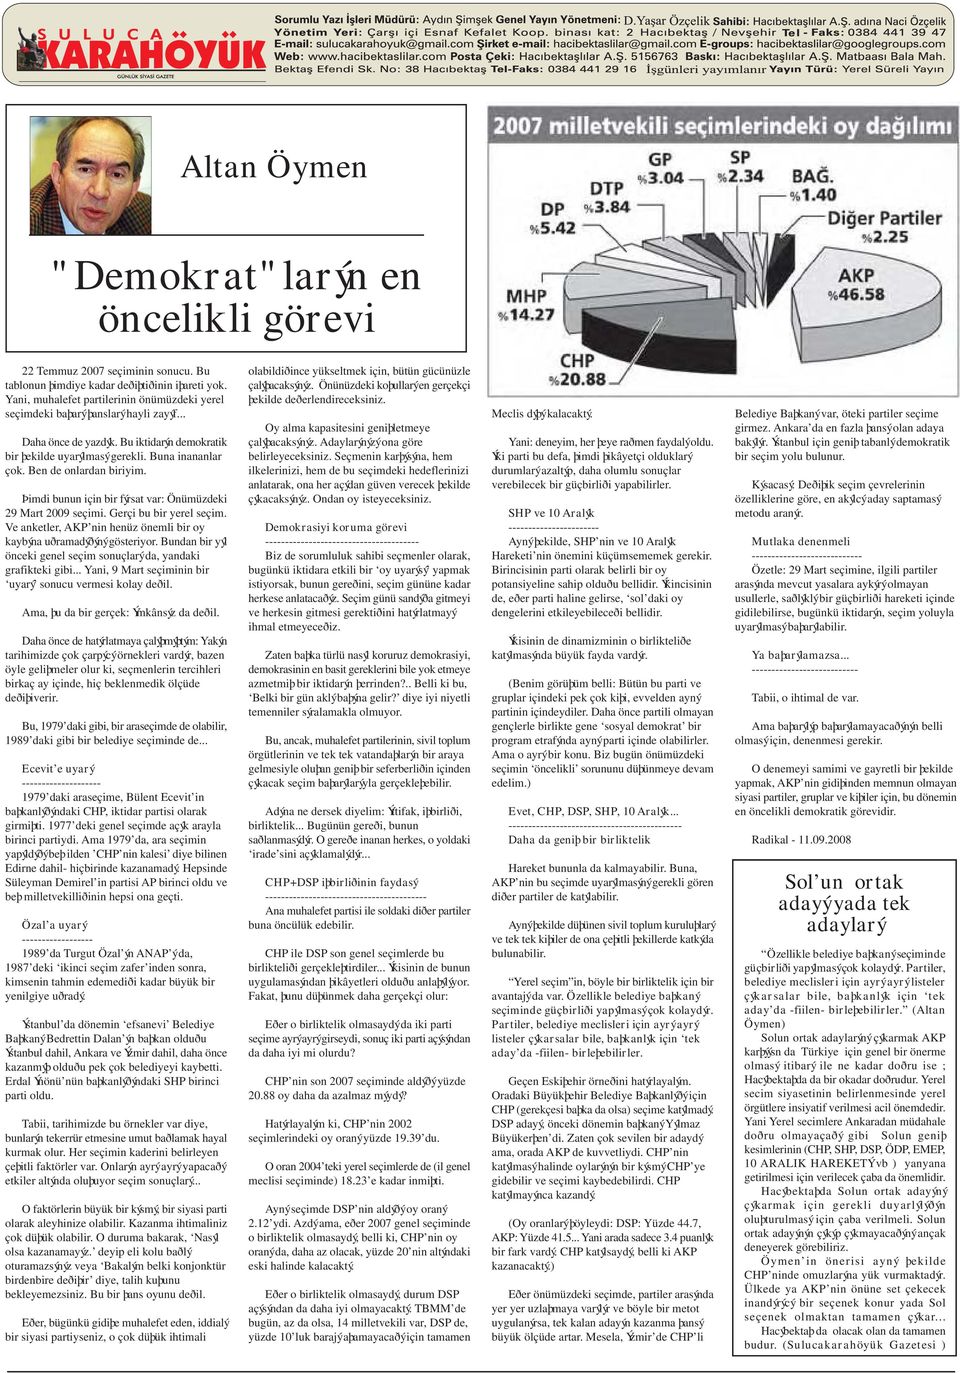 Ben de onlardan biriyim. Þimdi bunun için bir fýrsat var: Önümüzdeki 29 Mart 2009 seçimi. Gerçi bu bir yerel seçim. Ve anketler, AKP nin henüz önemli bir oy kaybýna uðramadýðýný gösteriyor.